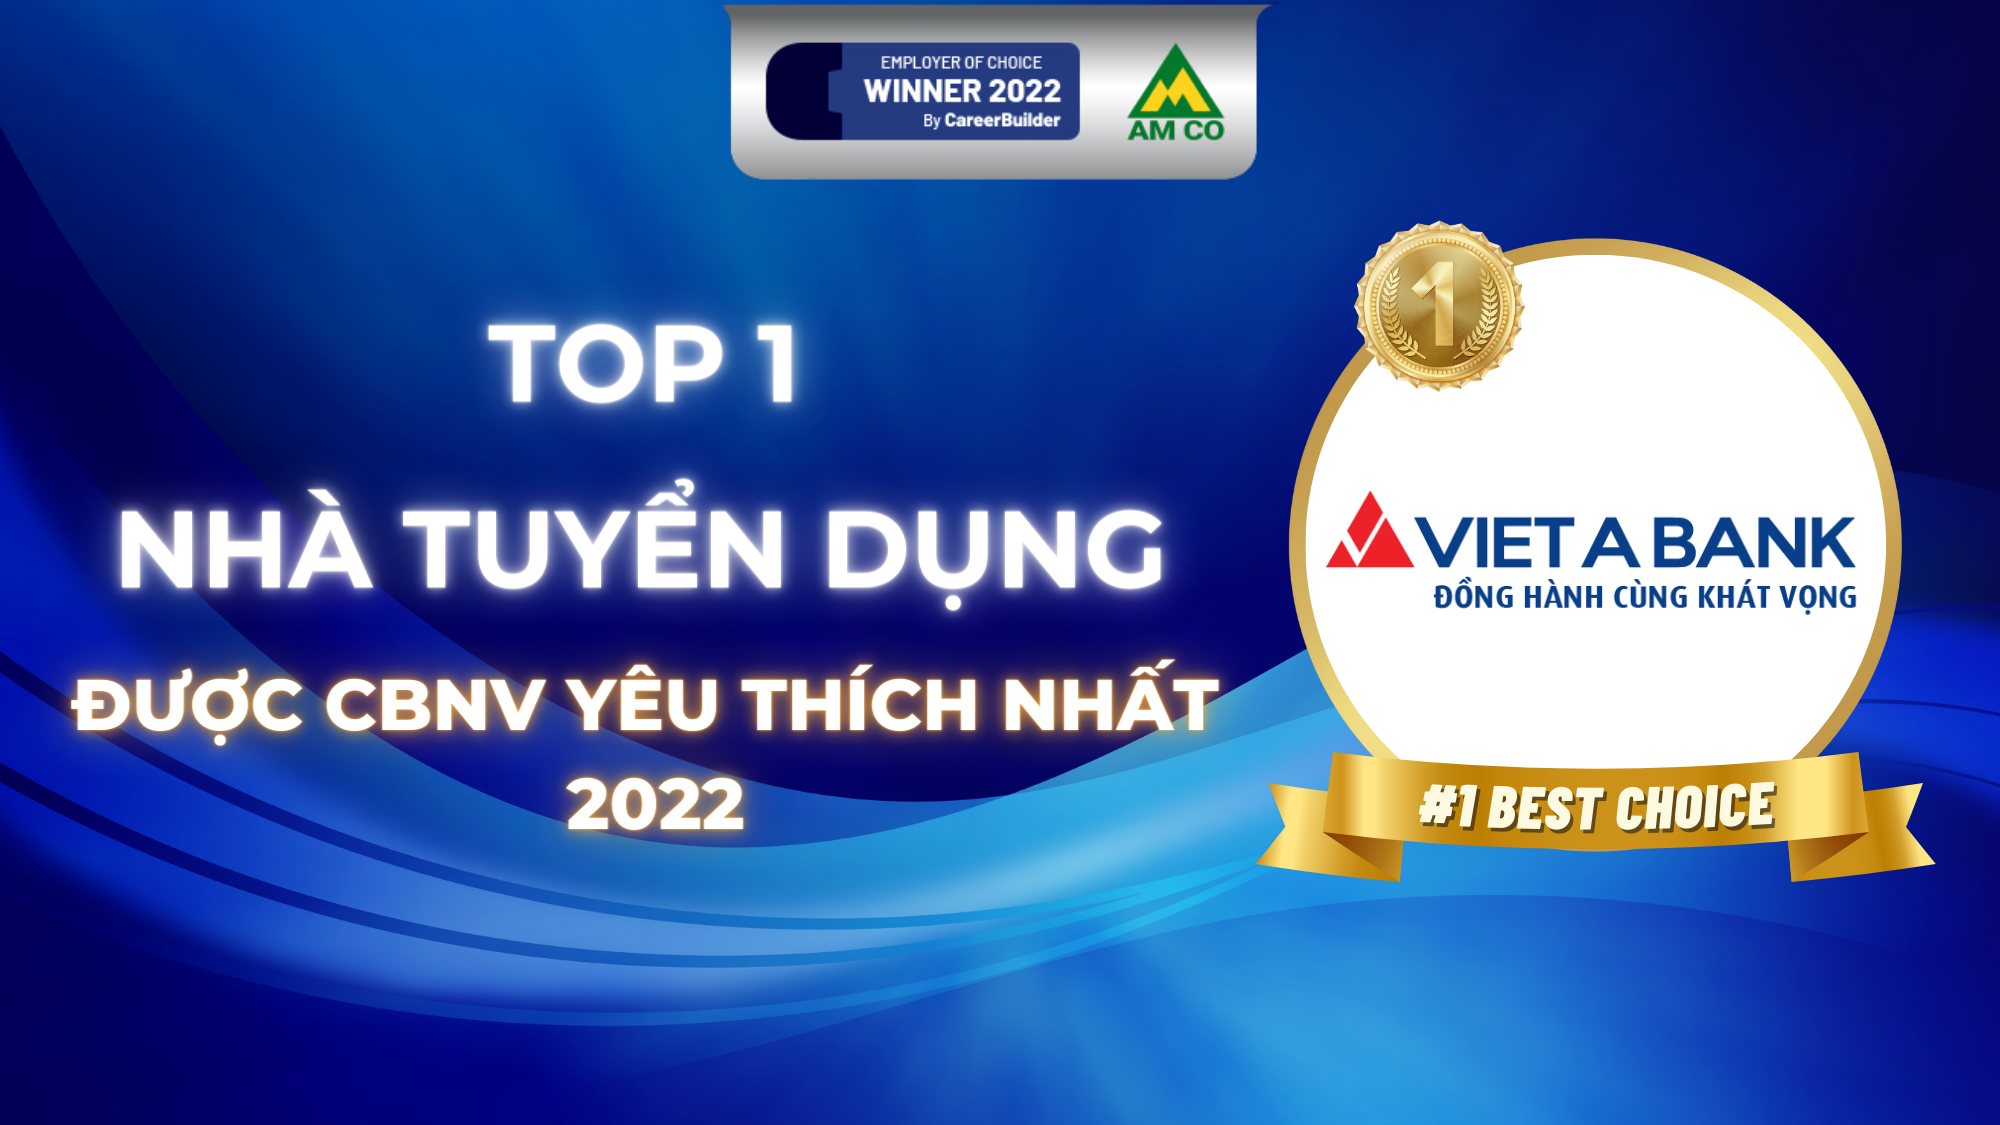 VietABank Ghi Danh Top 1 Trong Khảo Sát Nhà Tuyển Dụng Yêu Thích 2022